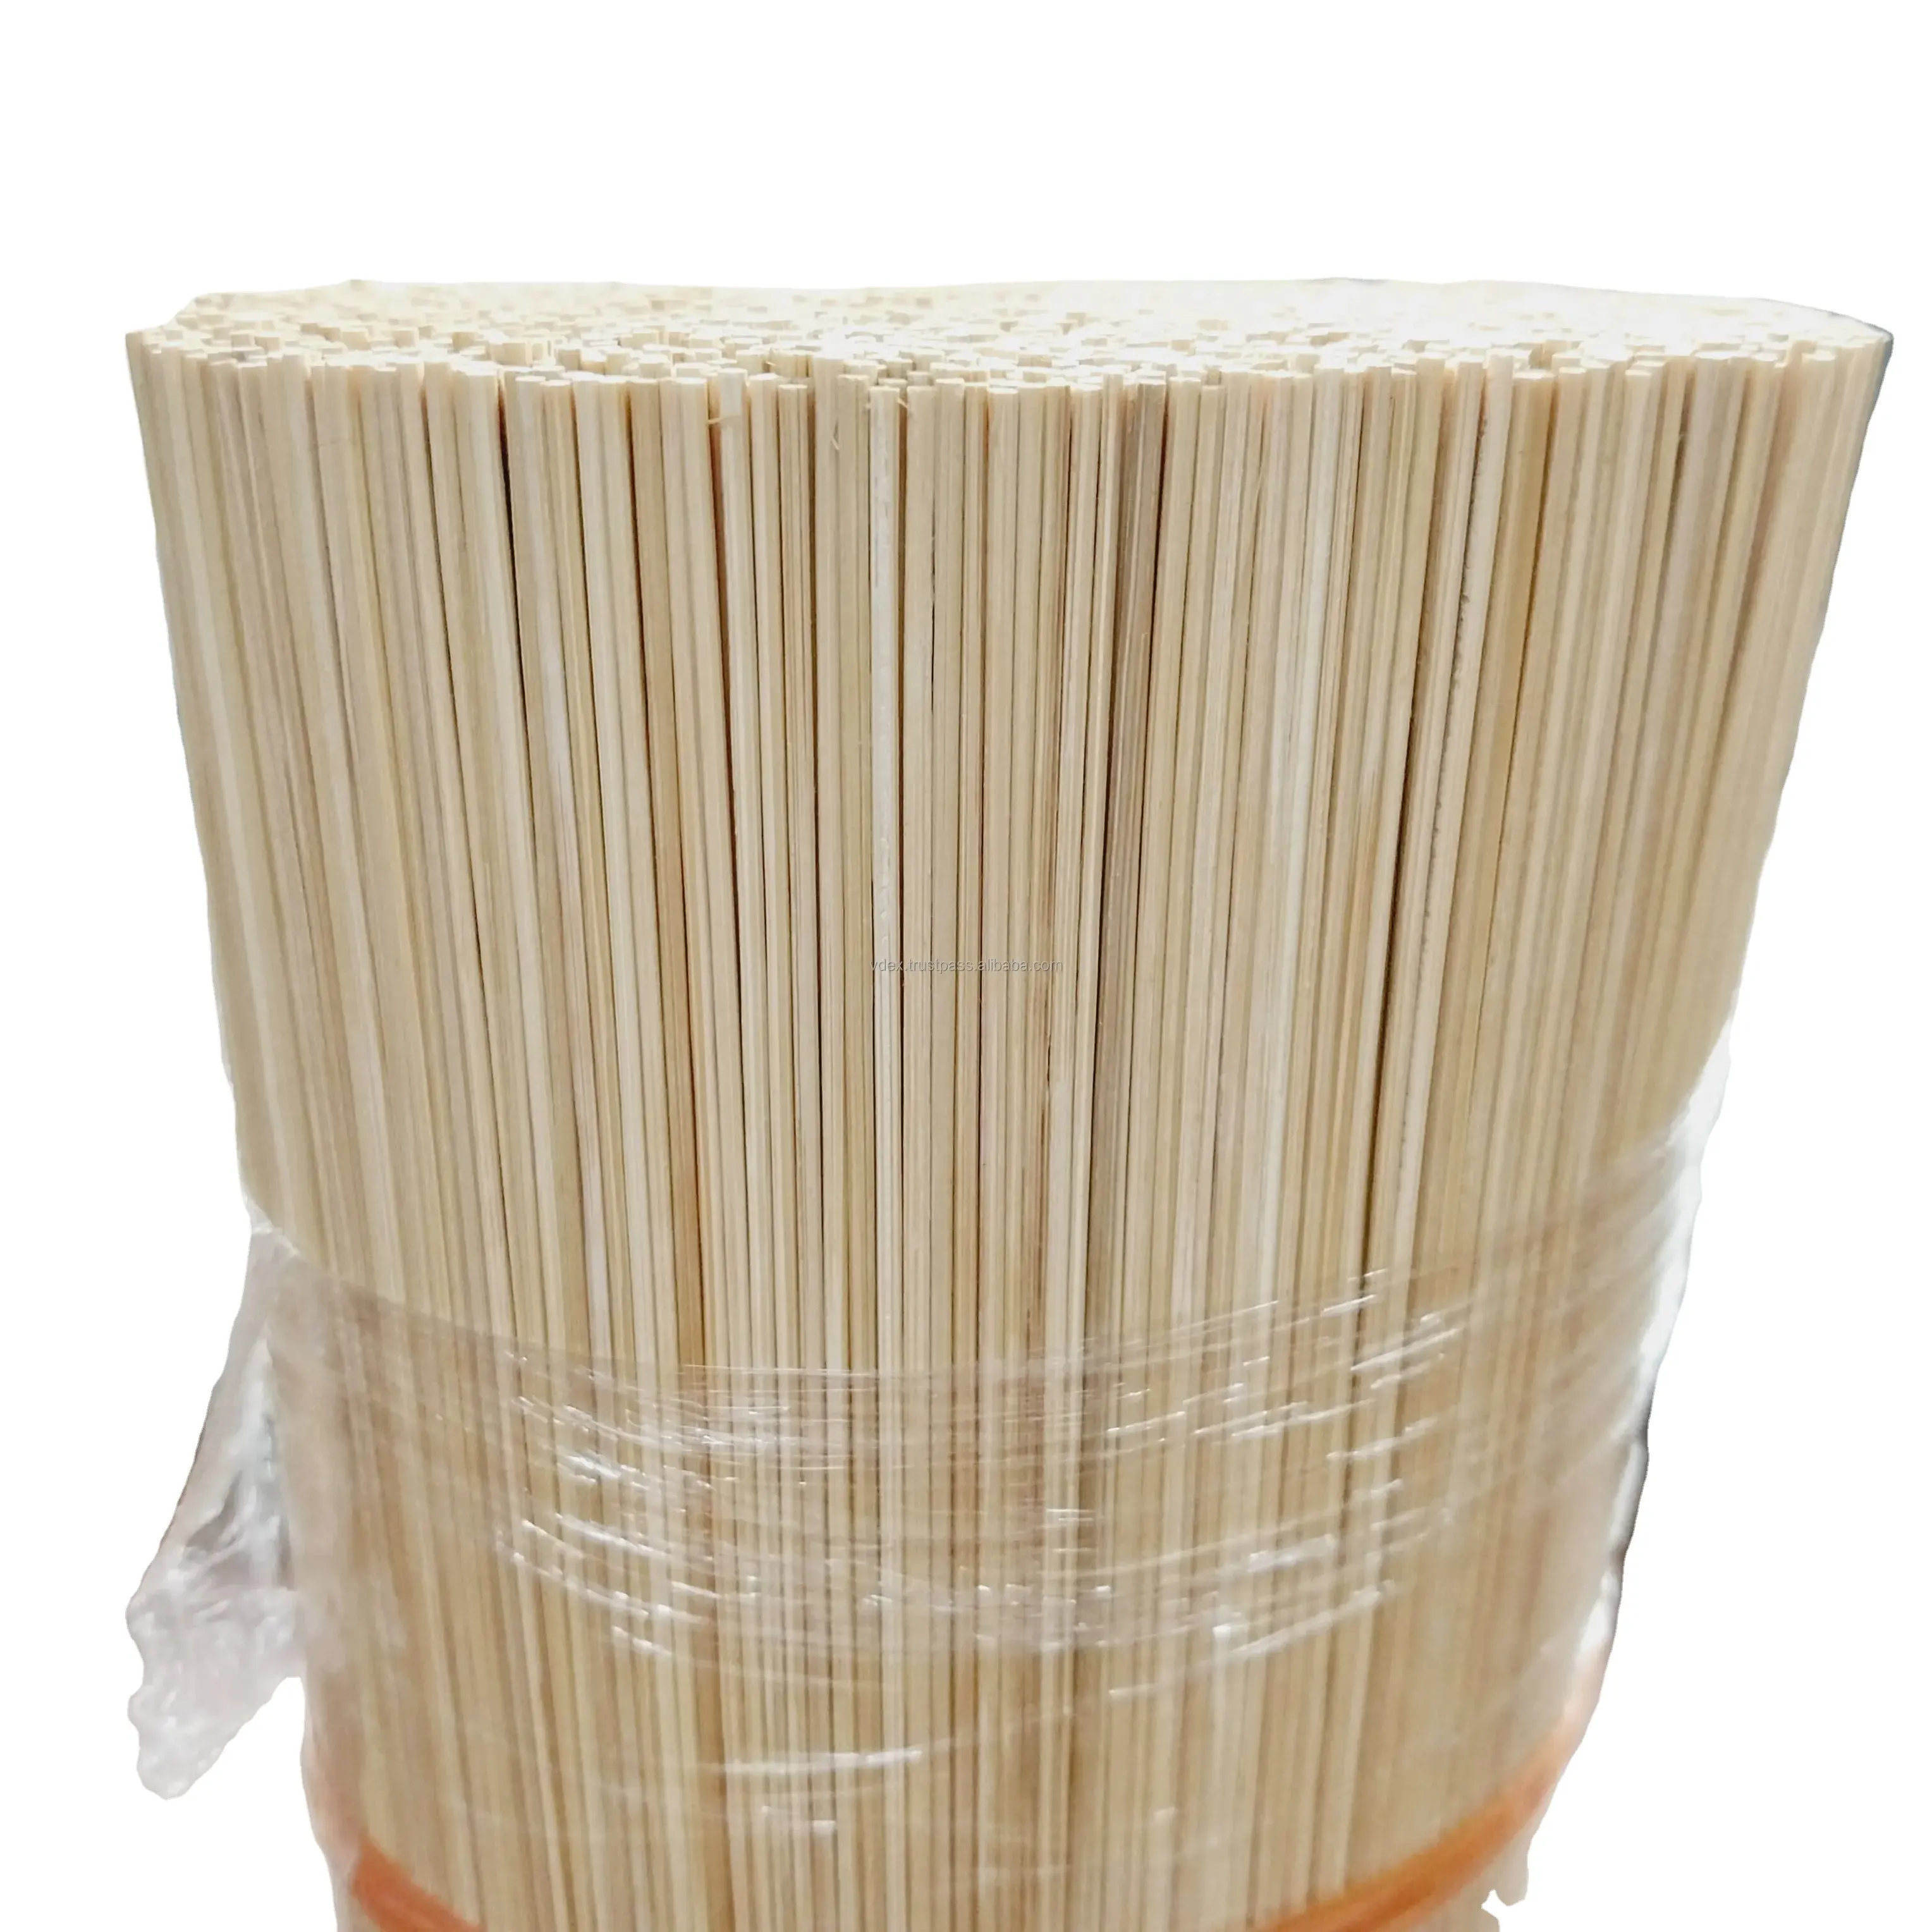 Atacado Hotest Product Bamboo Sticks 100% natureza do Vietnã usado na fabricação de incenso